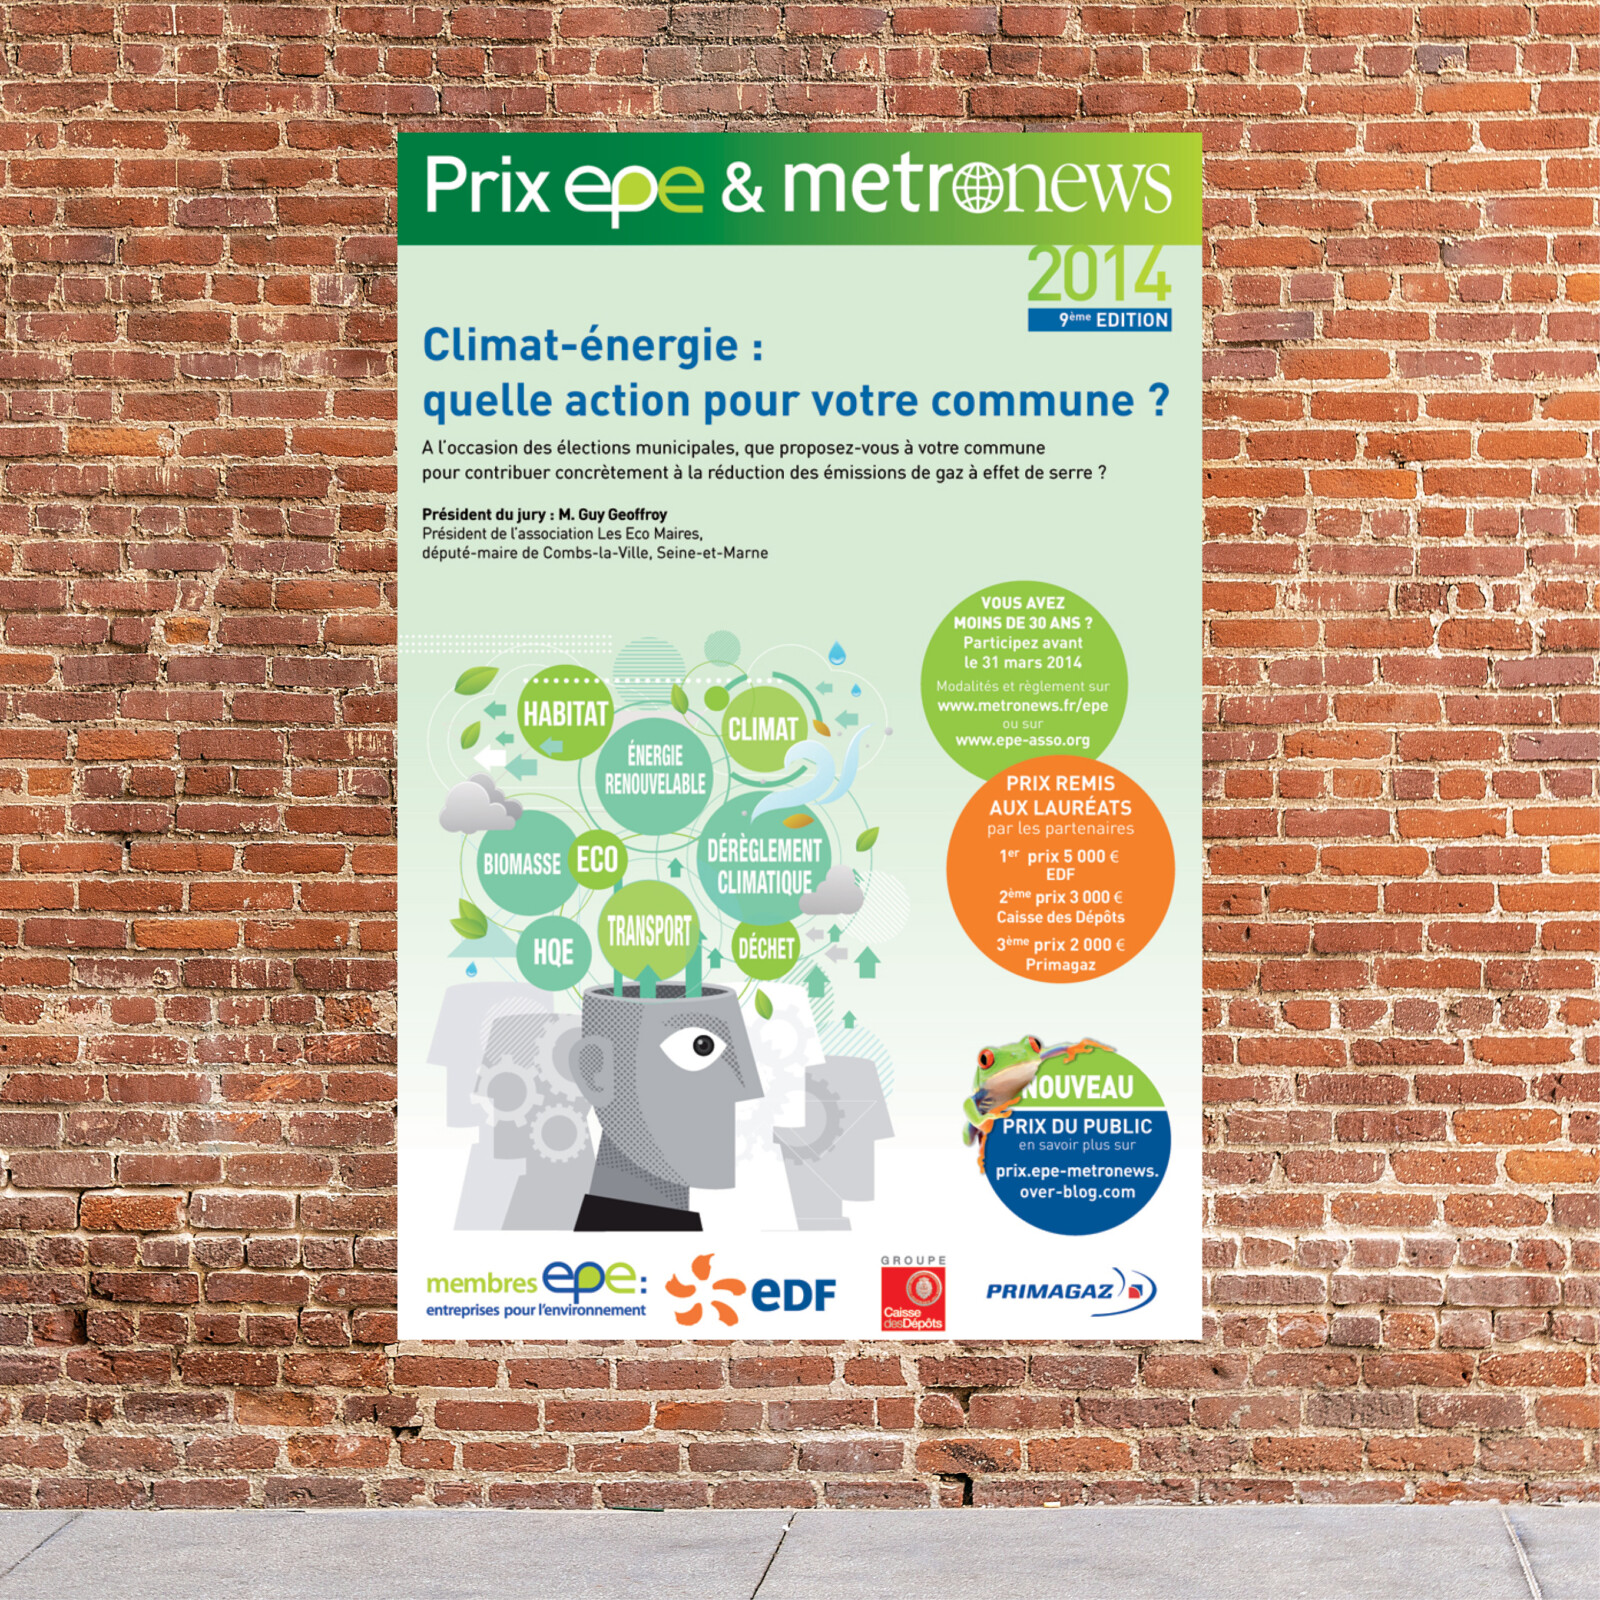 Proposition pour l'appel à projet EPE-metronews sur le thème : climat et énergie, quelles actions pour votre commune ?